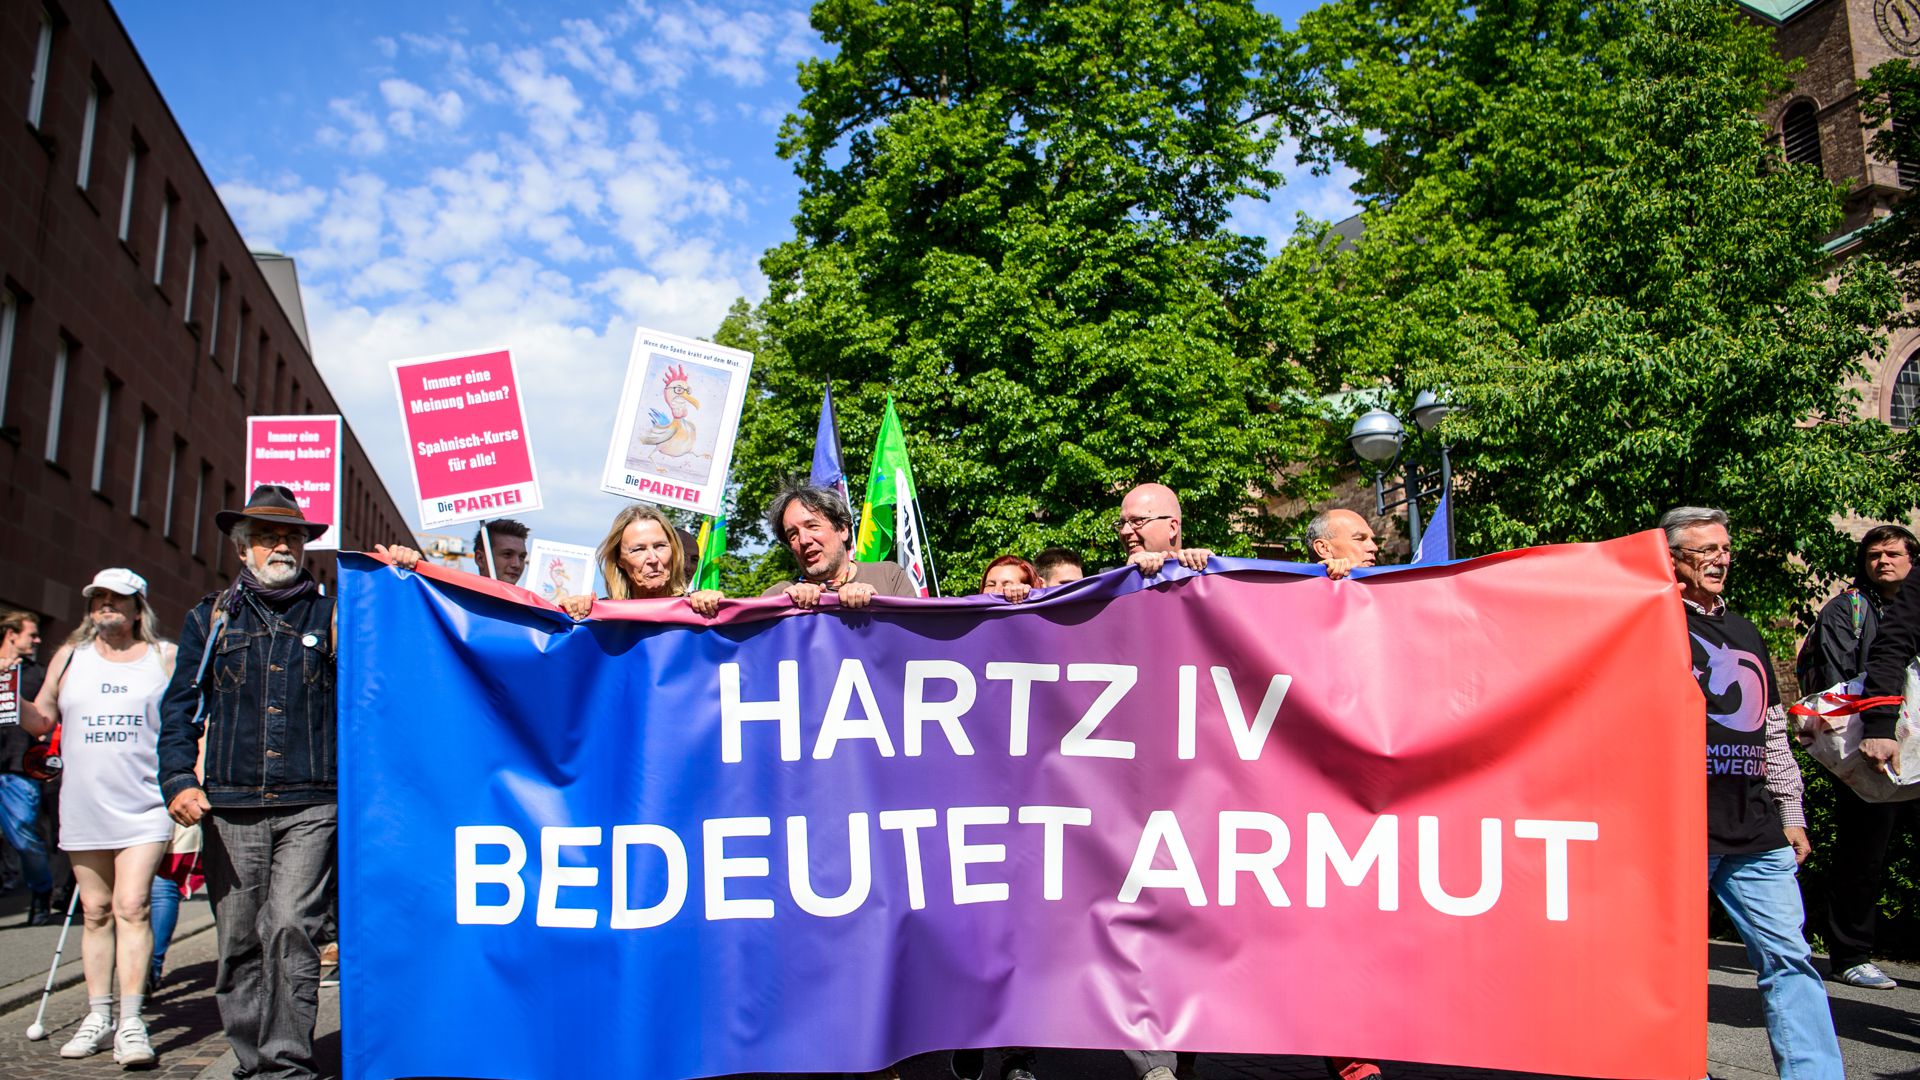 28.04.2018, Baden-Württemberg, Karlsruhe: Demonstranten tragen ein Banner mit der Aufschrift "Hartz IV bedeutet Armut" vor dem Treffen von Bundesgesundheitsminister Spahn mit der Hartz-IV-Kritikerin Schlensog. Vor dem Treffen haben etwa 100 Menschen demonstriert. Die Teilnehmer forderten mehr Geld und eine bessere Behandlung von Beziehern der Sozialleistung. Foto: Sina Schuldt/dpa ++ +++ dpa-Bildfunk +++